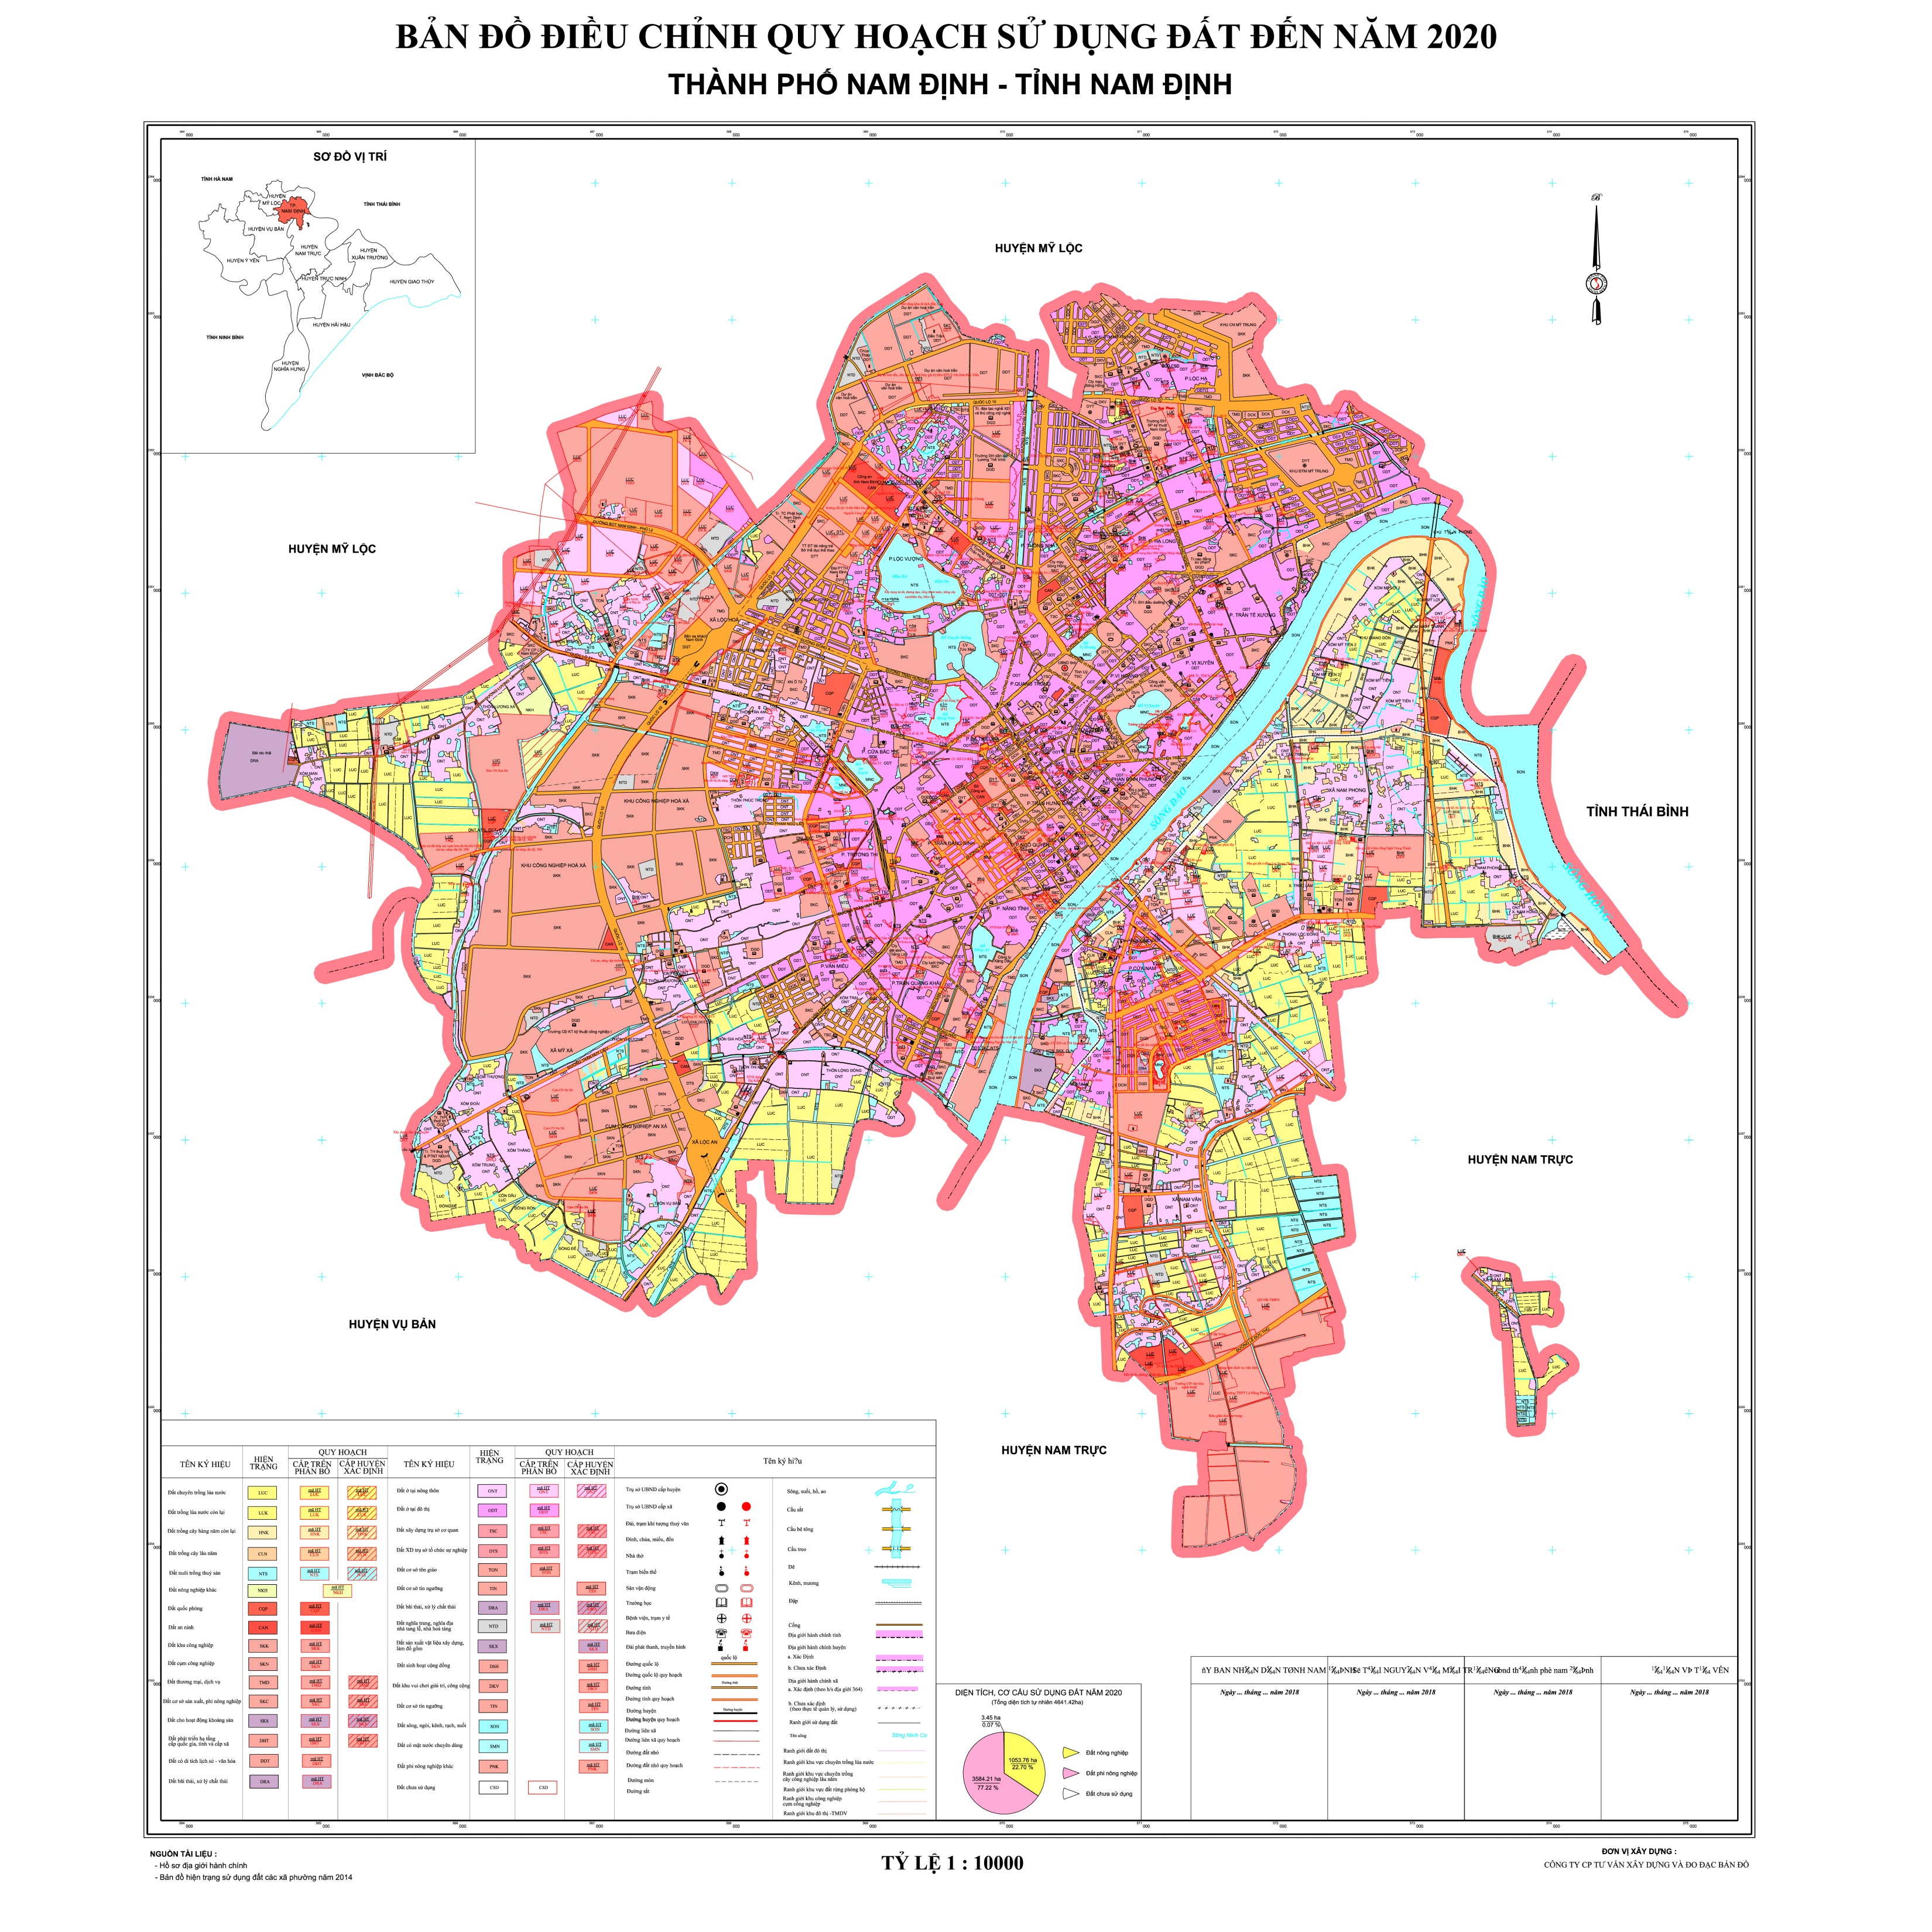 Khám phá bản đồ hành chính tỉnh Nam Định năm 2024 và tìm hiểu về sự phát triển đầy tiềm năng của tỉnh. Các thông tin về địa điểm, kết nối giao thông, cơ sở hạ tầng, và quy hoạch đô thị sẽ được cập nhật mới nhất trên bản đồ.